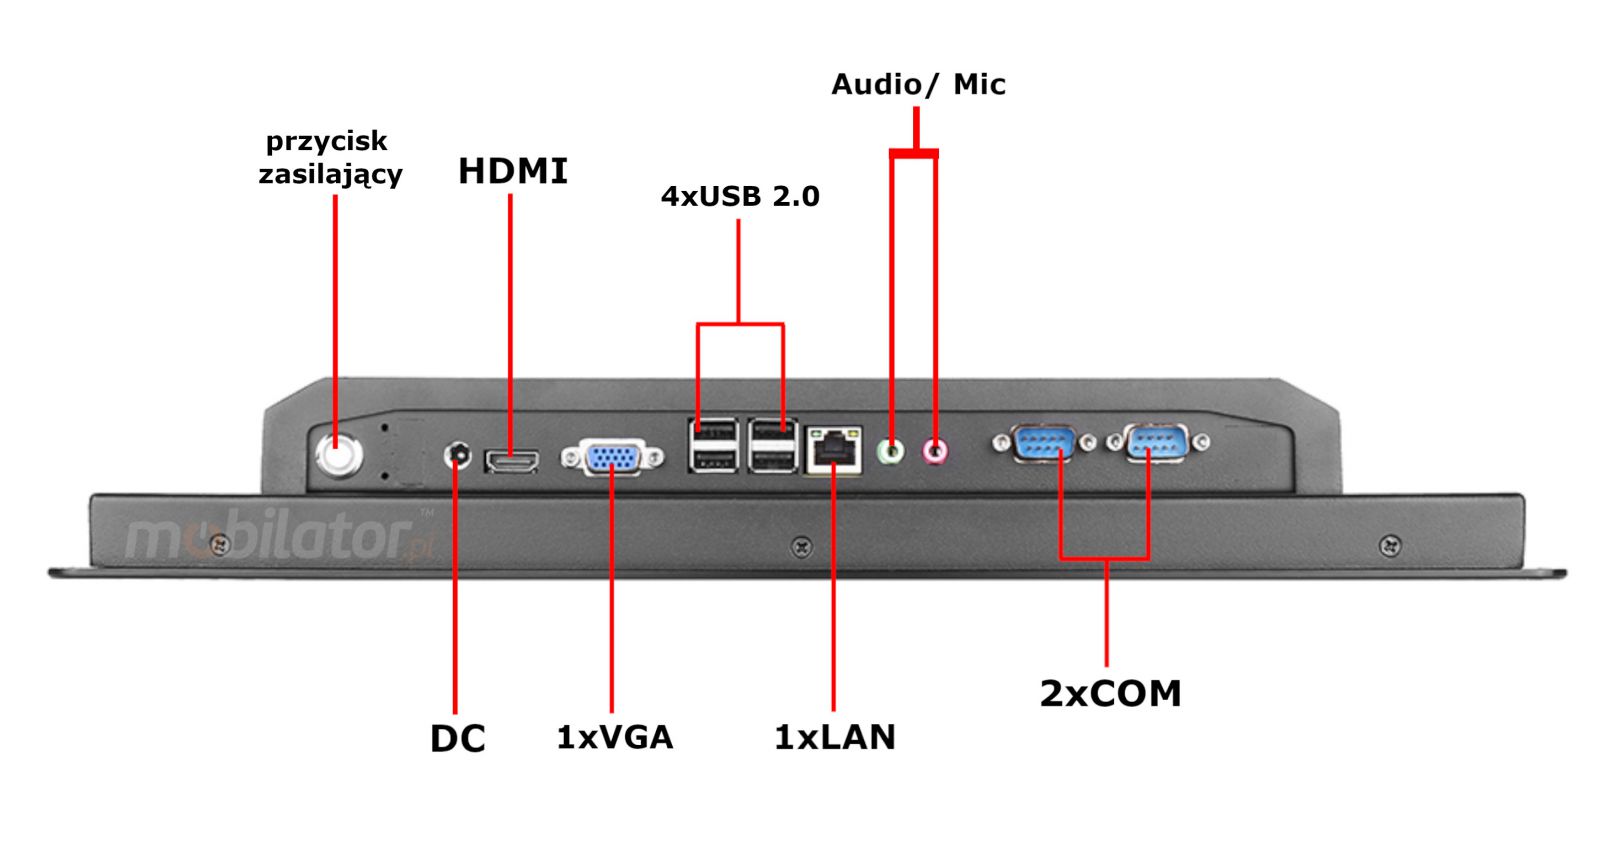 BIBOX-170PC1 zcza: 4x USB 2.0 |2x COM | 1x LAN 1x VGA | 1x HDMI |DC 12V